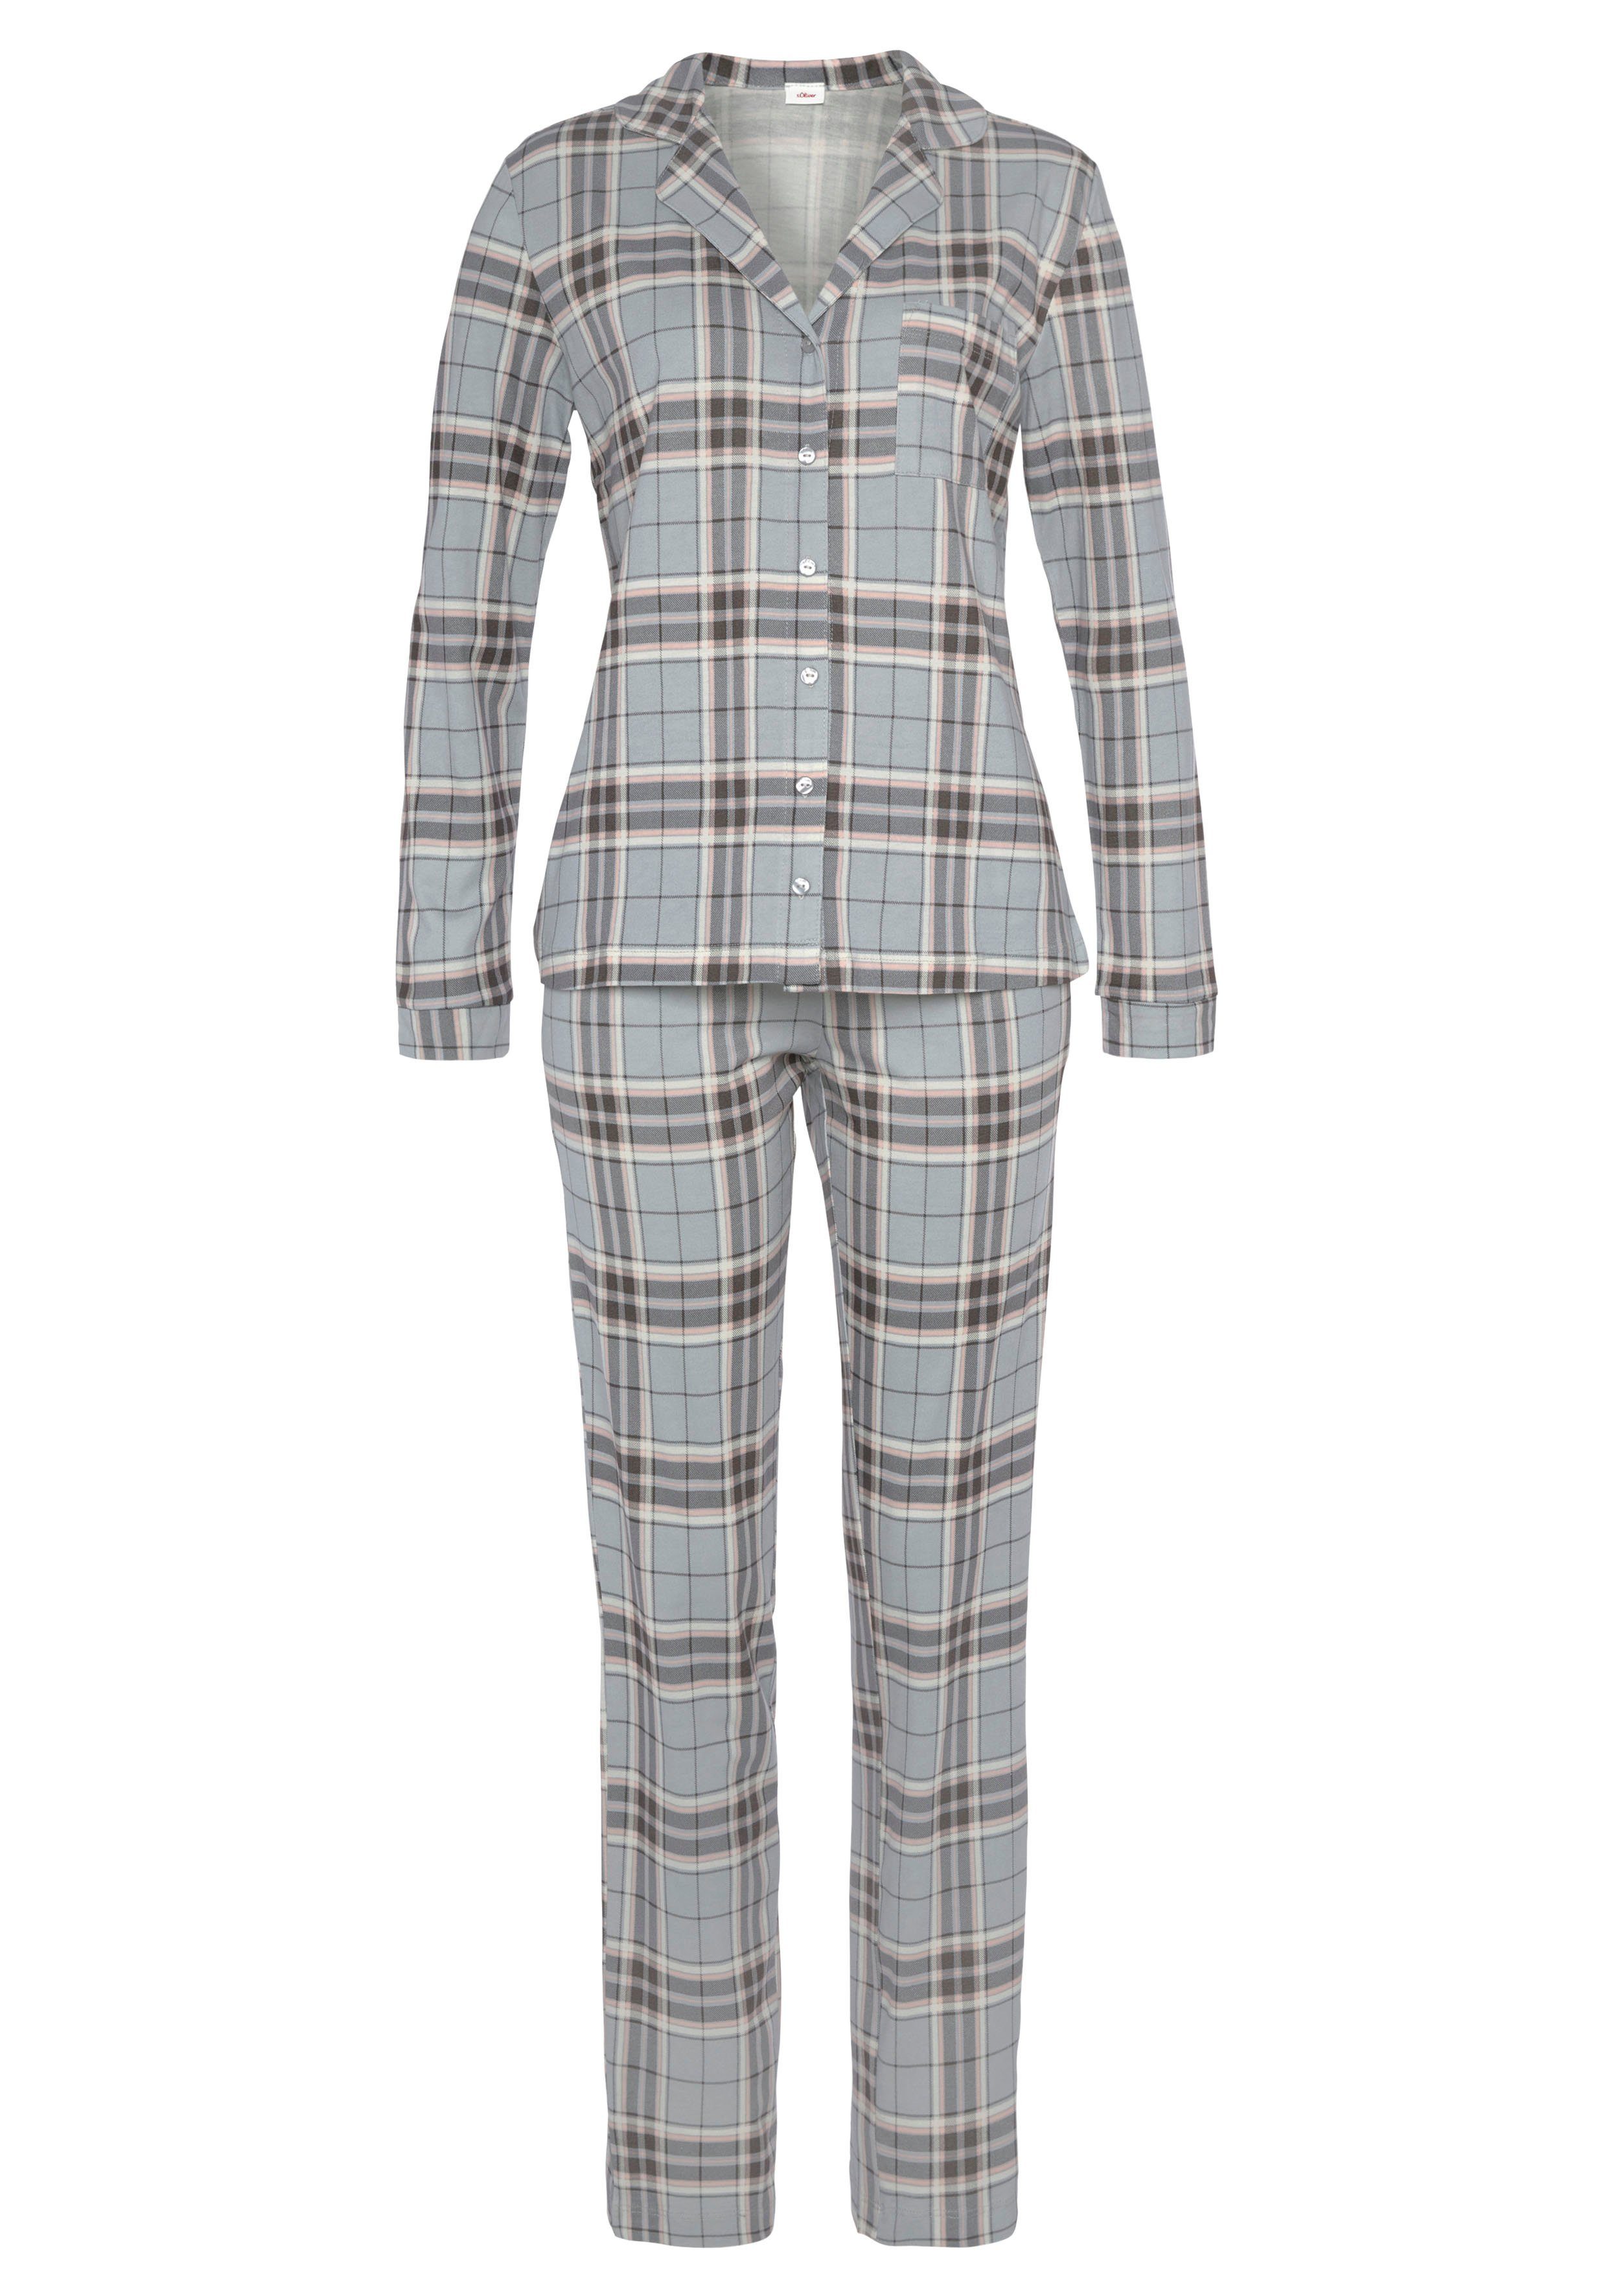 Pyjama grau-kariert s.Oliver mit tlg) (2 Muster schönem